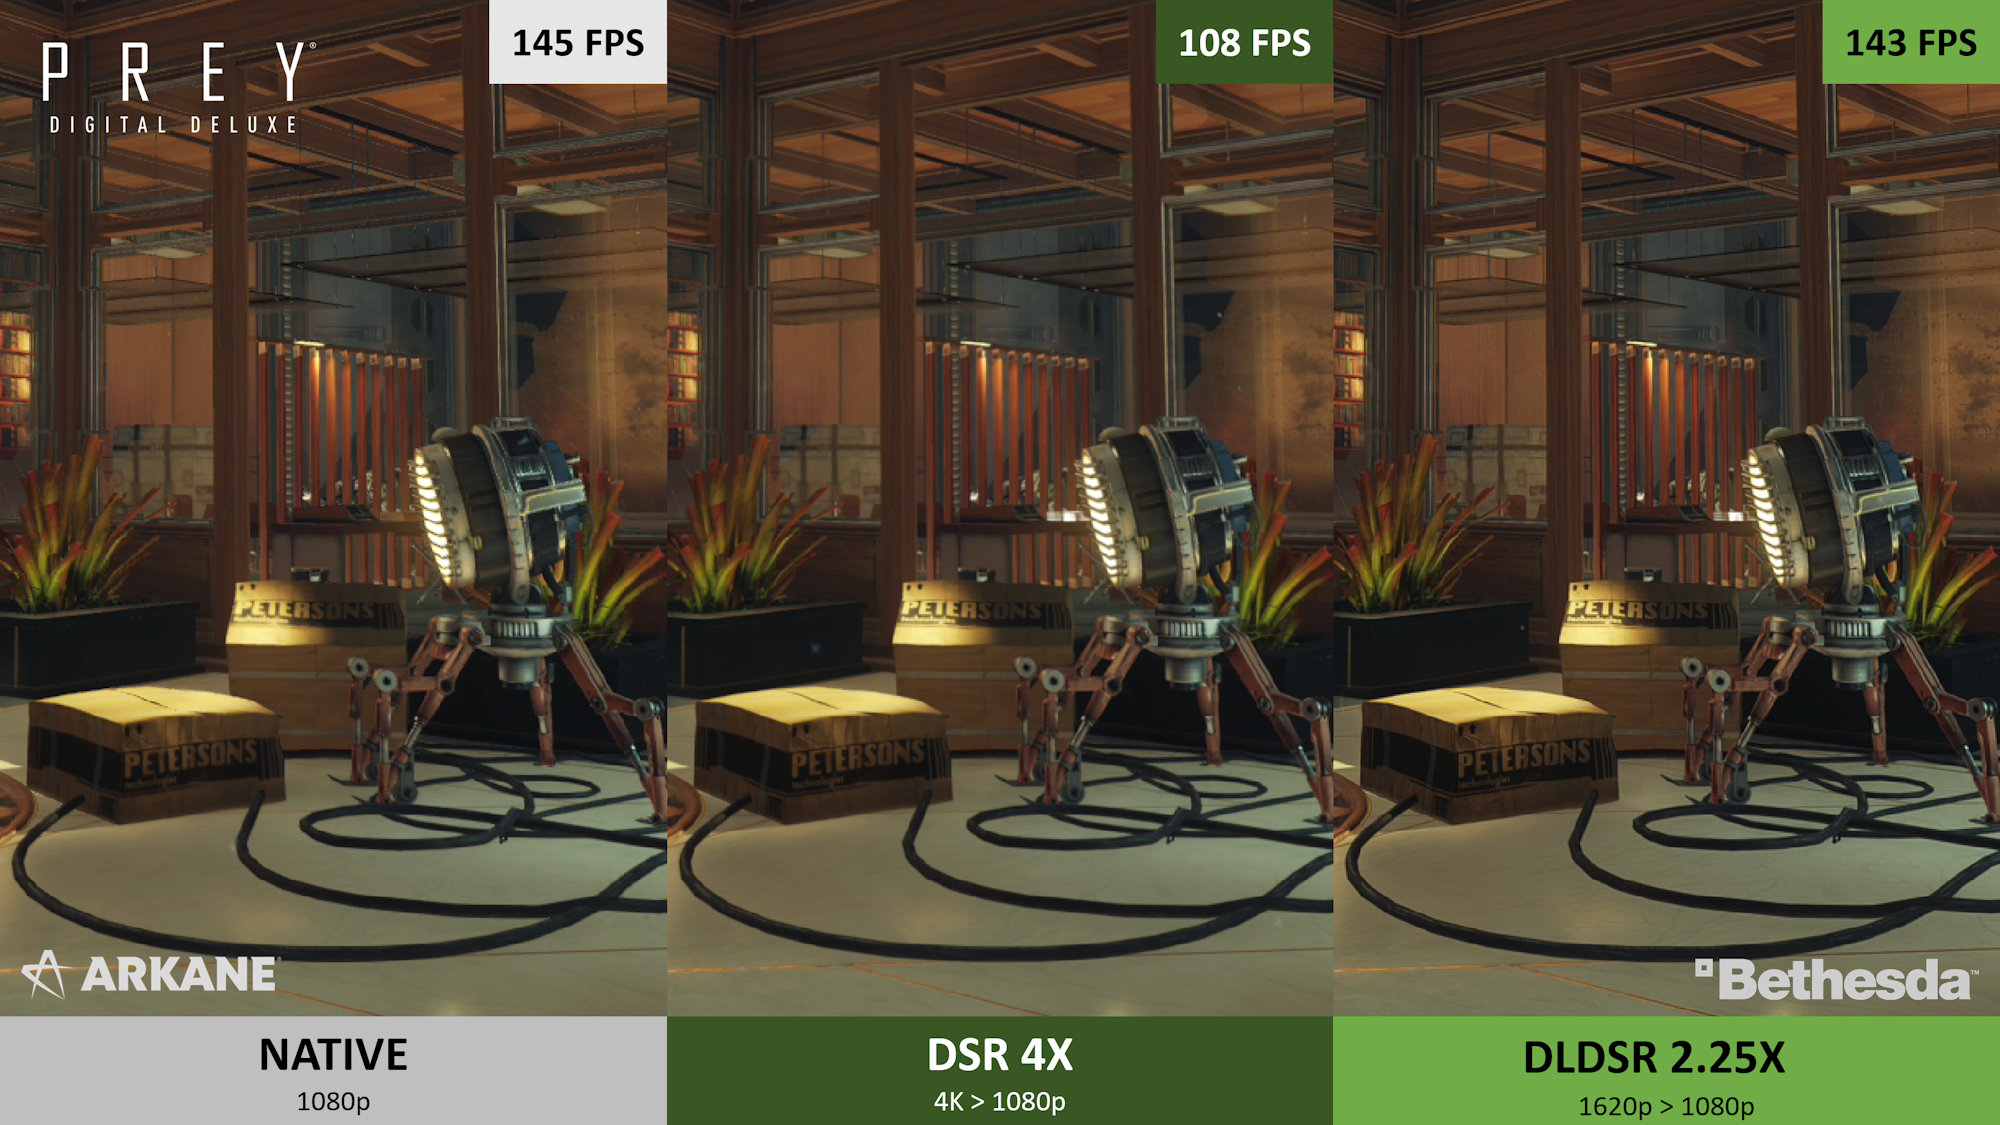 عملکرد تکنولوژی DLDSR انویدیا در ریمستر بازی Prey